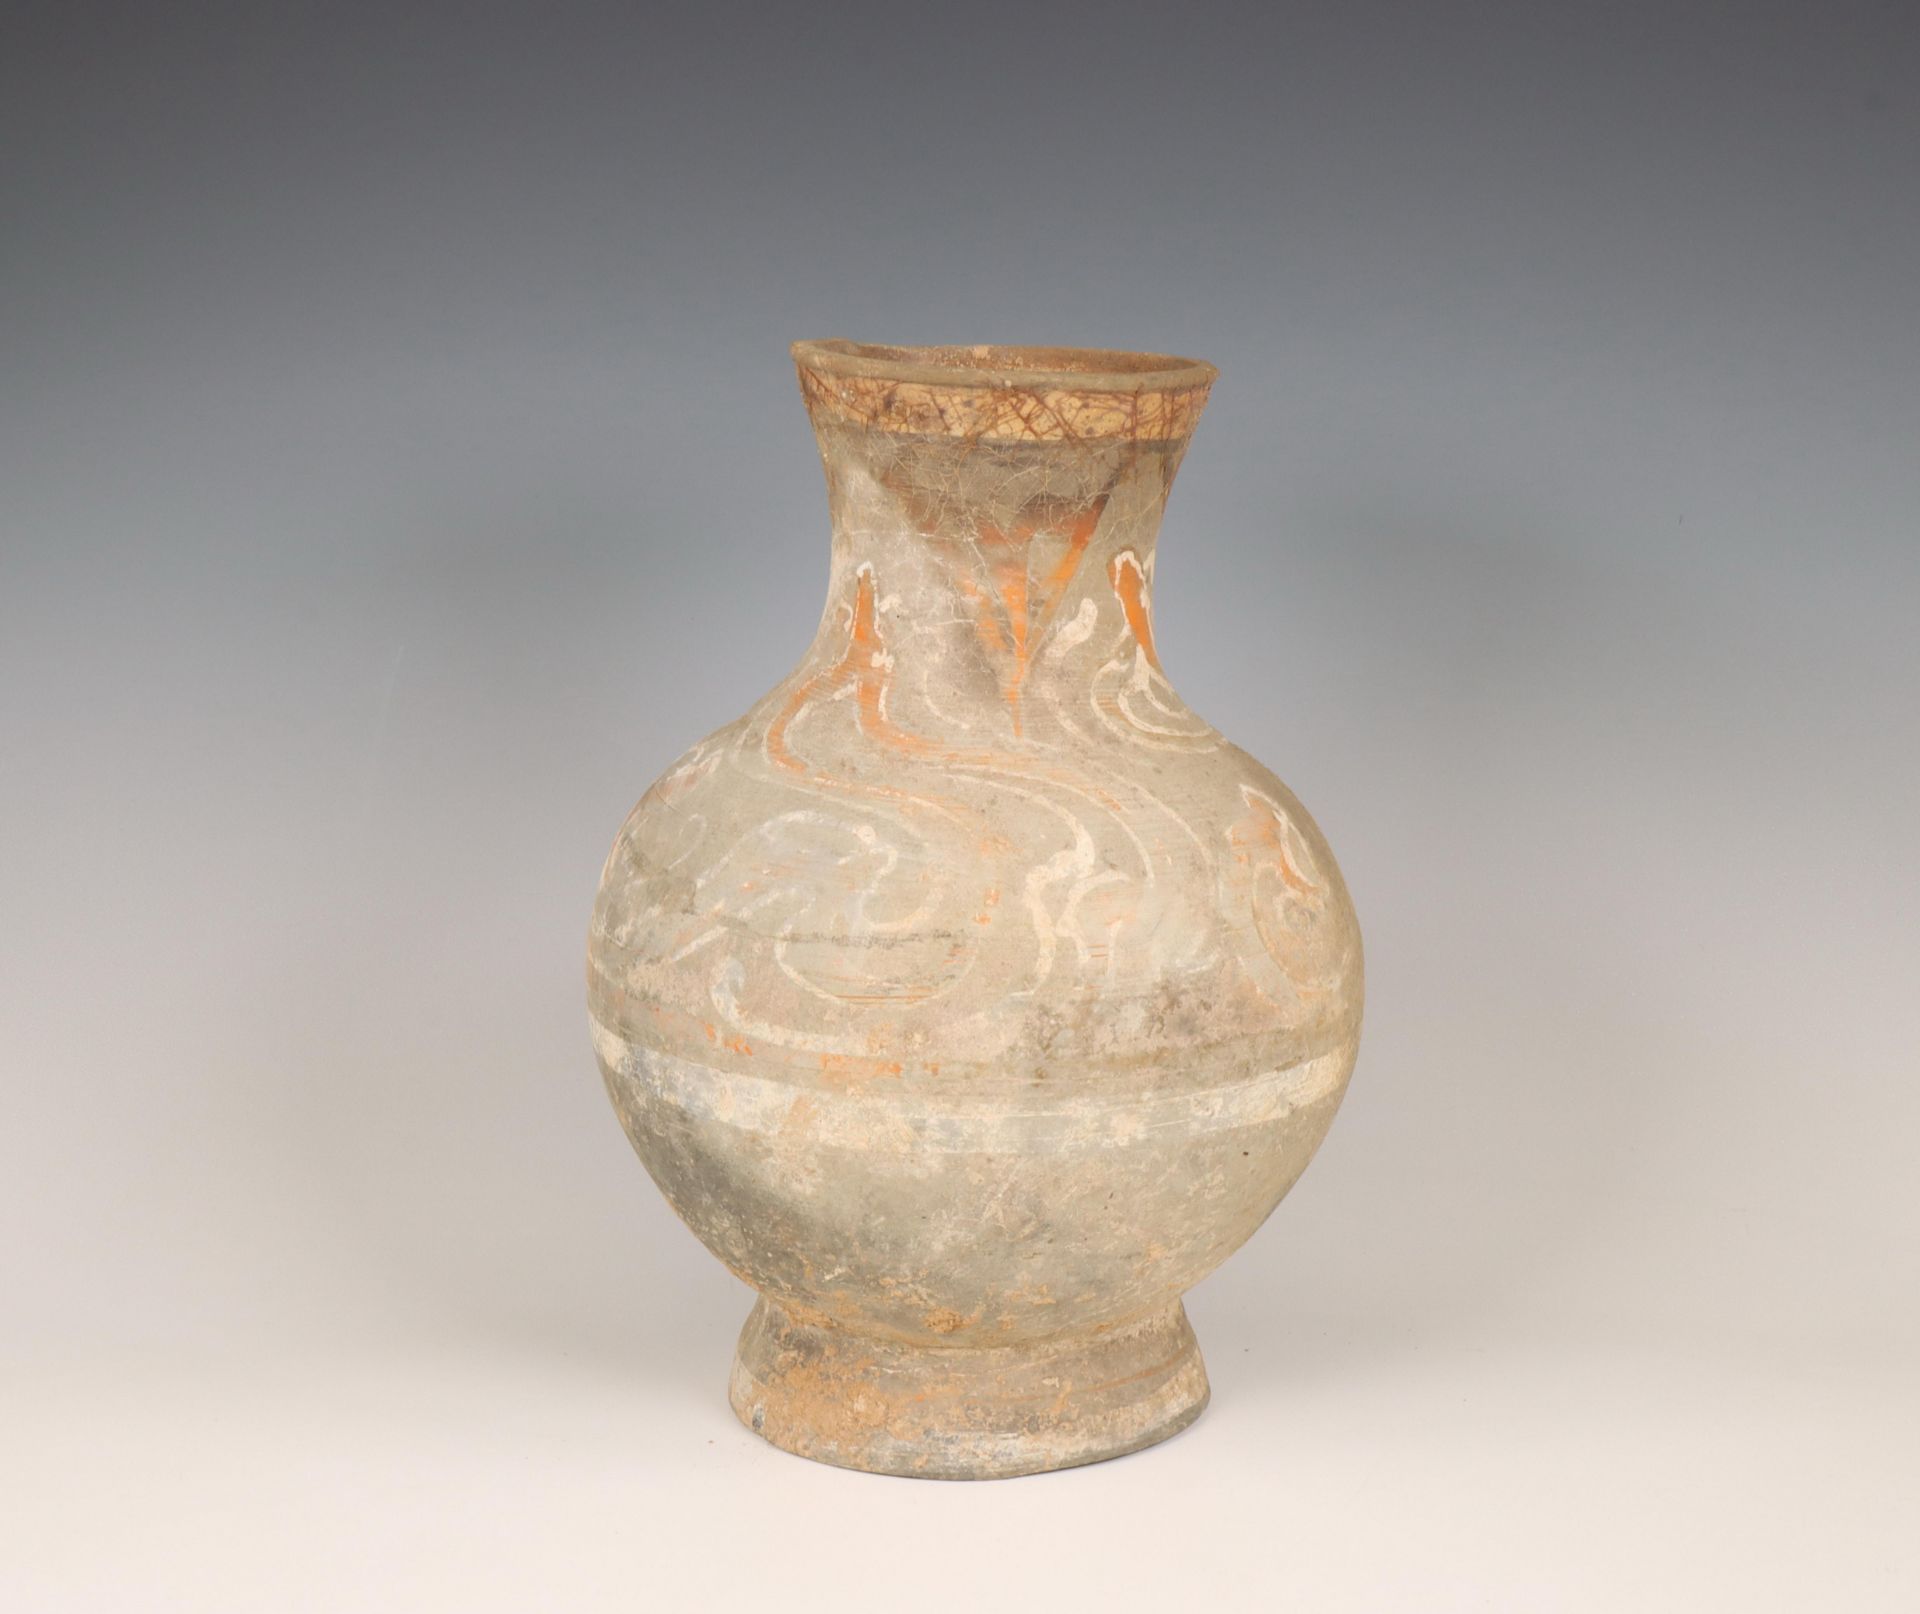 China, pottery vase , probably Han dynasty (206 BC-220 AD),